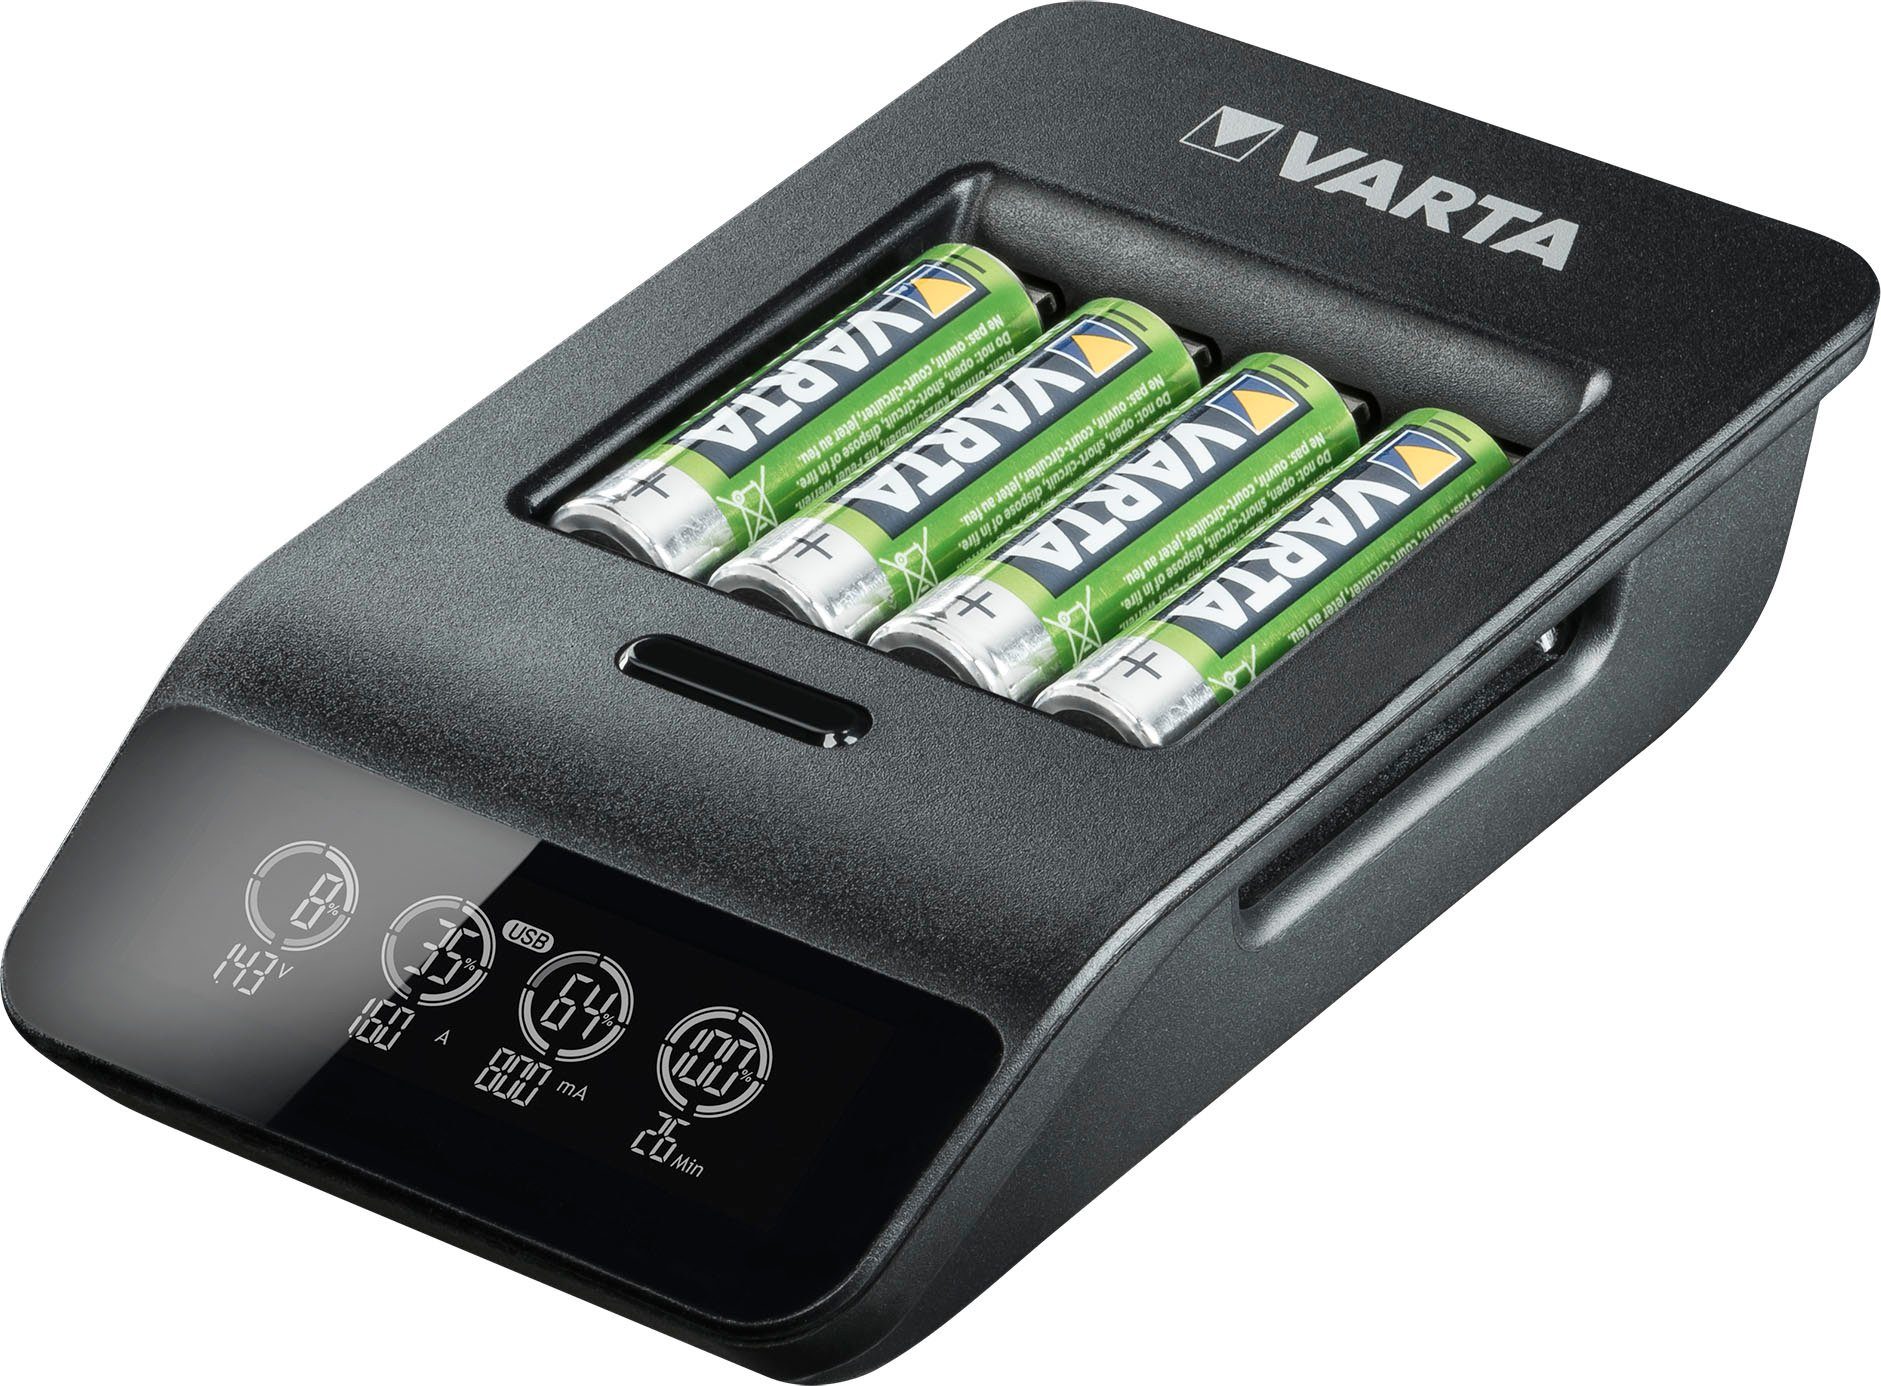 VARTA VARTA Charger+ Powerstation und Smart Micro AA/AAA-Akkus USB-Geräte LCD für 4